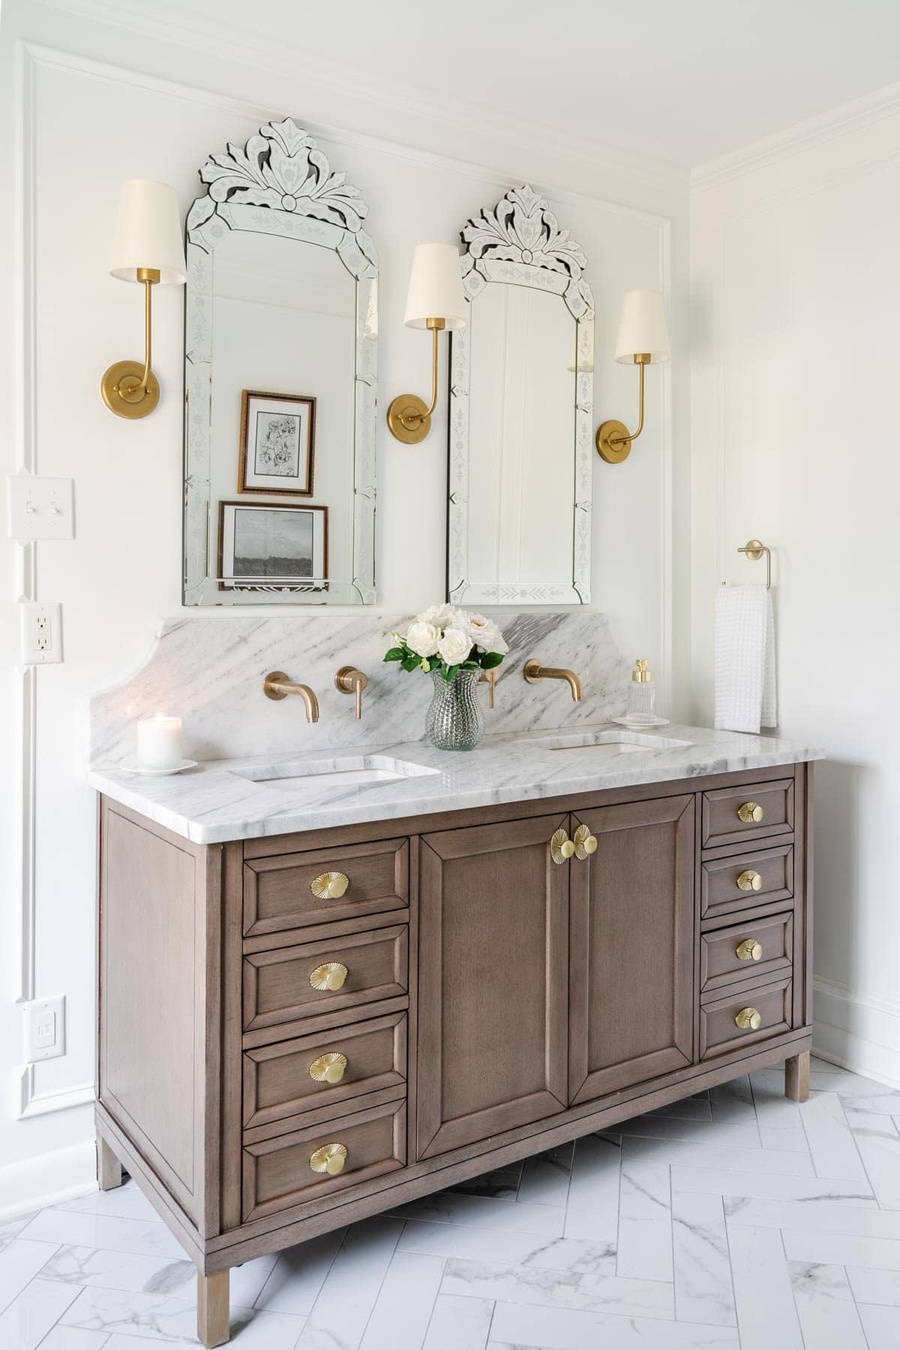 Gương ốp viền bọc bạc kiểu dáng cổ điển sang trọng rất phù hợp để decor phòng tắm Vintage